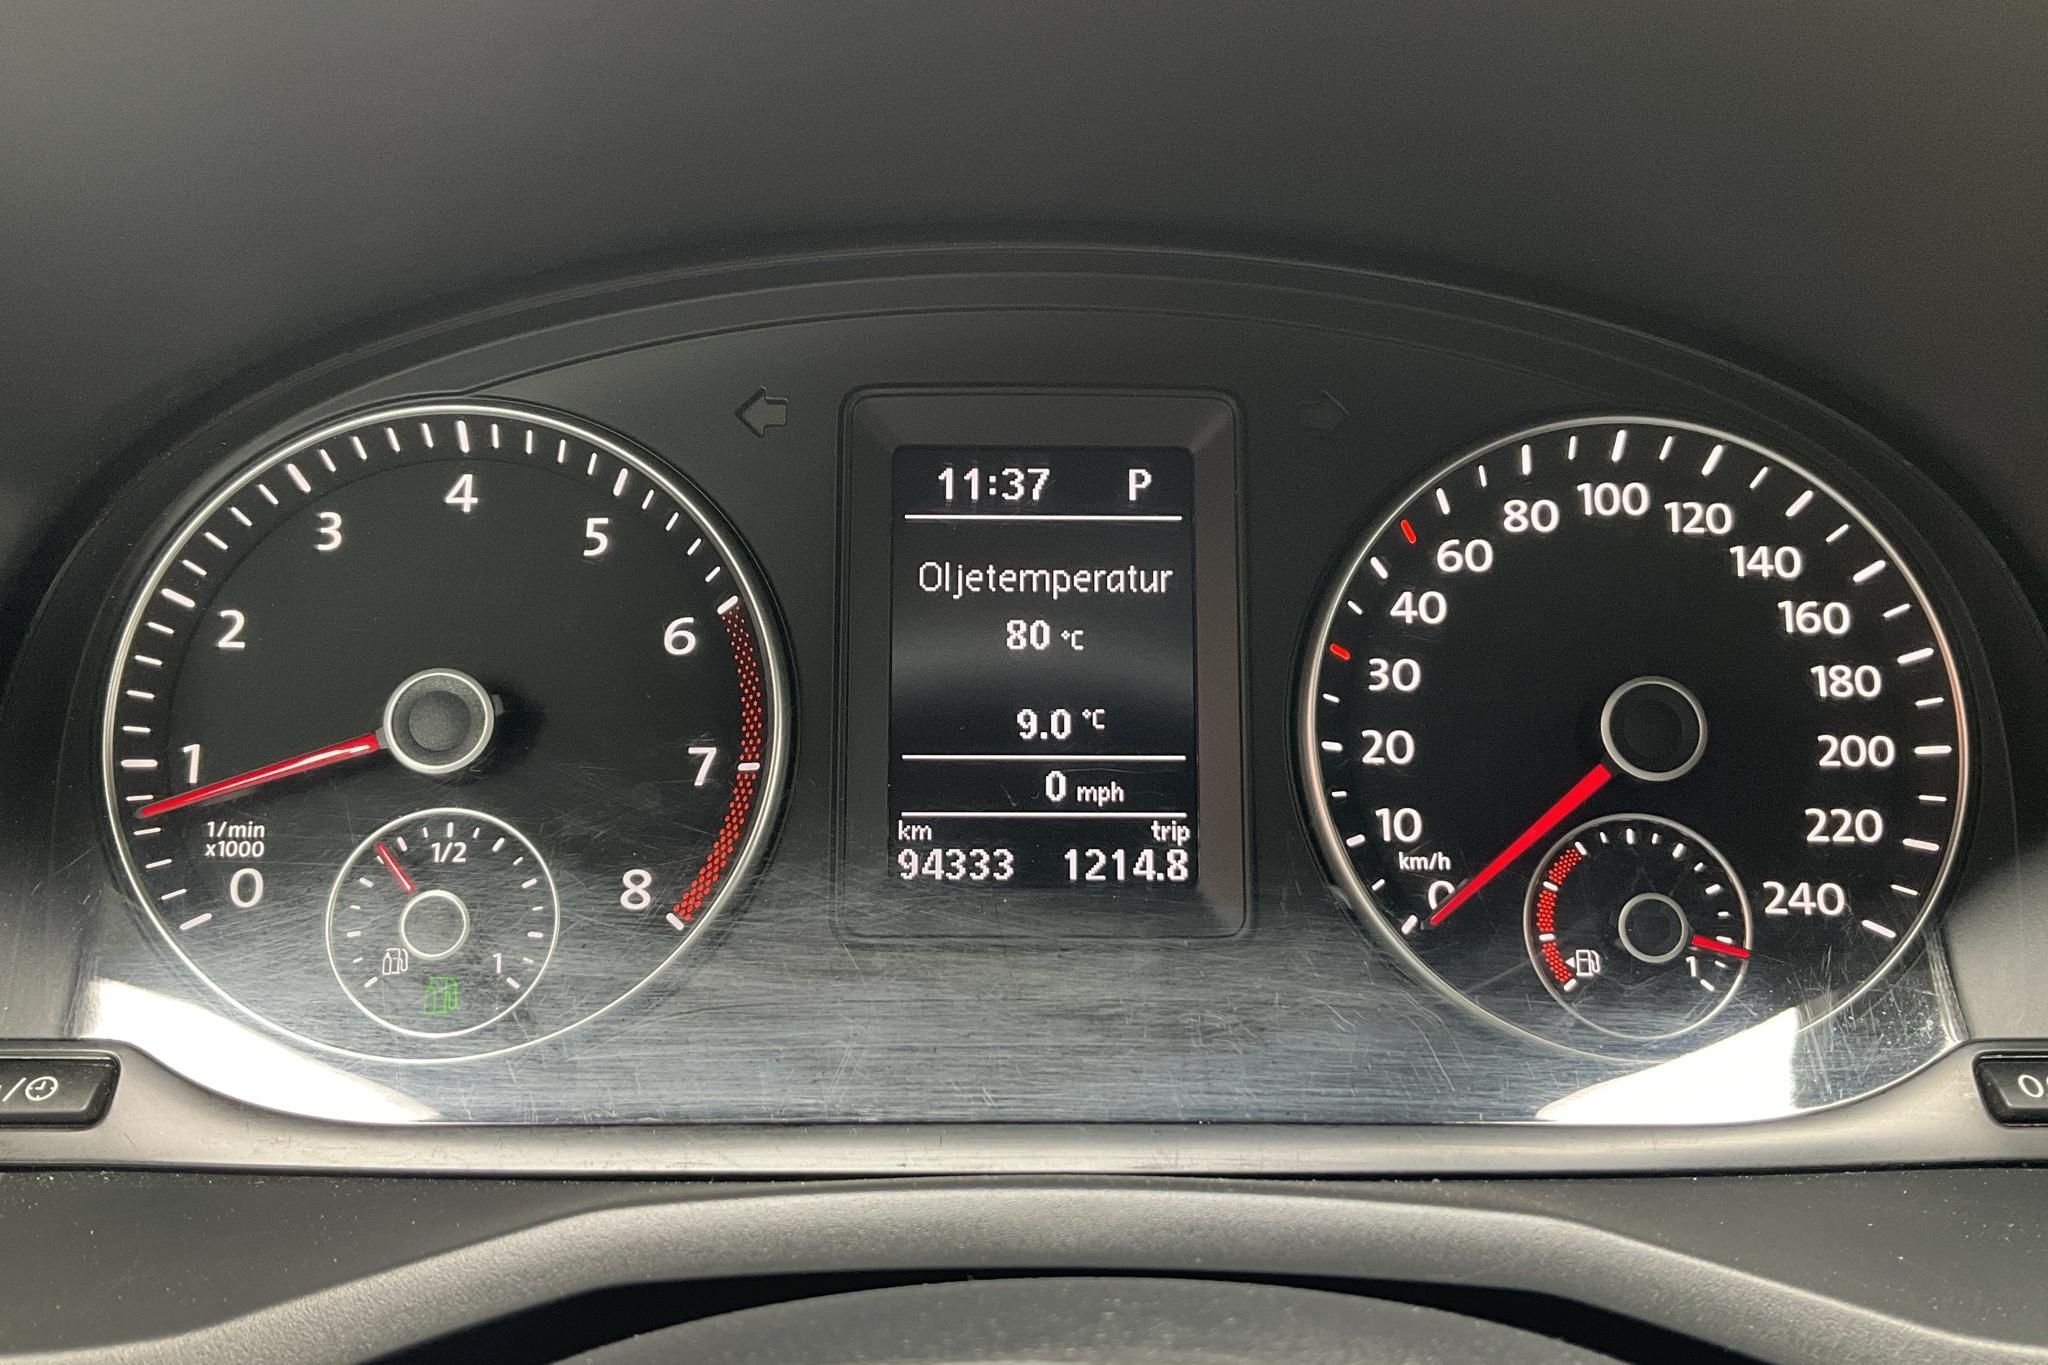 VW Caddy 1.4 TGI Maxi Skåp (110hk) - 94 330 km - Automatic - white - 2019